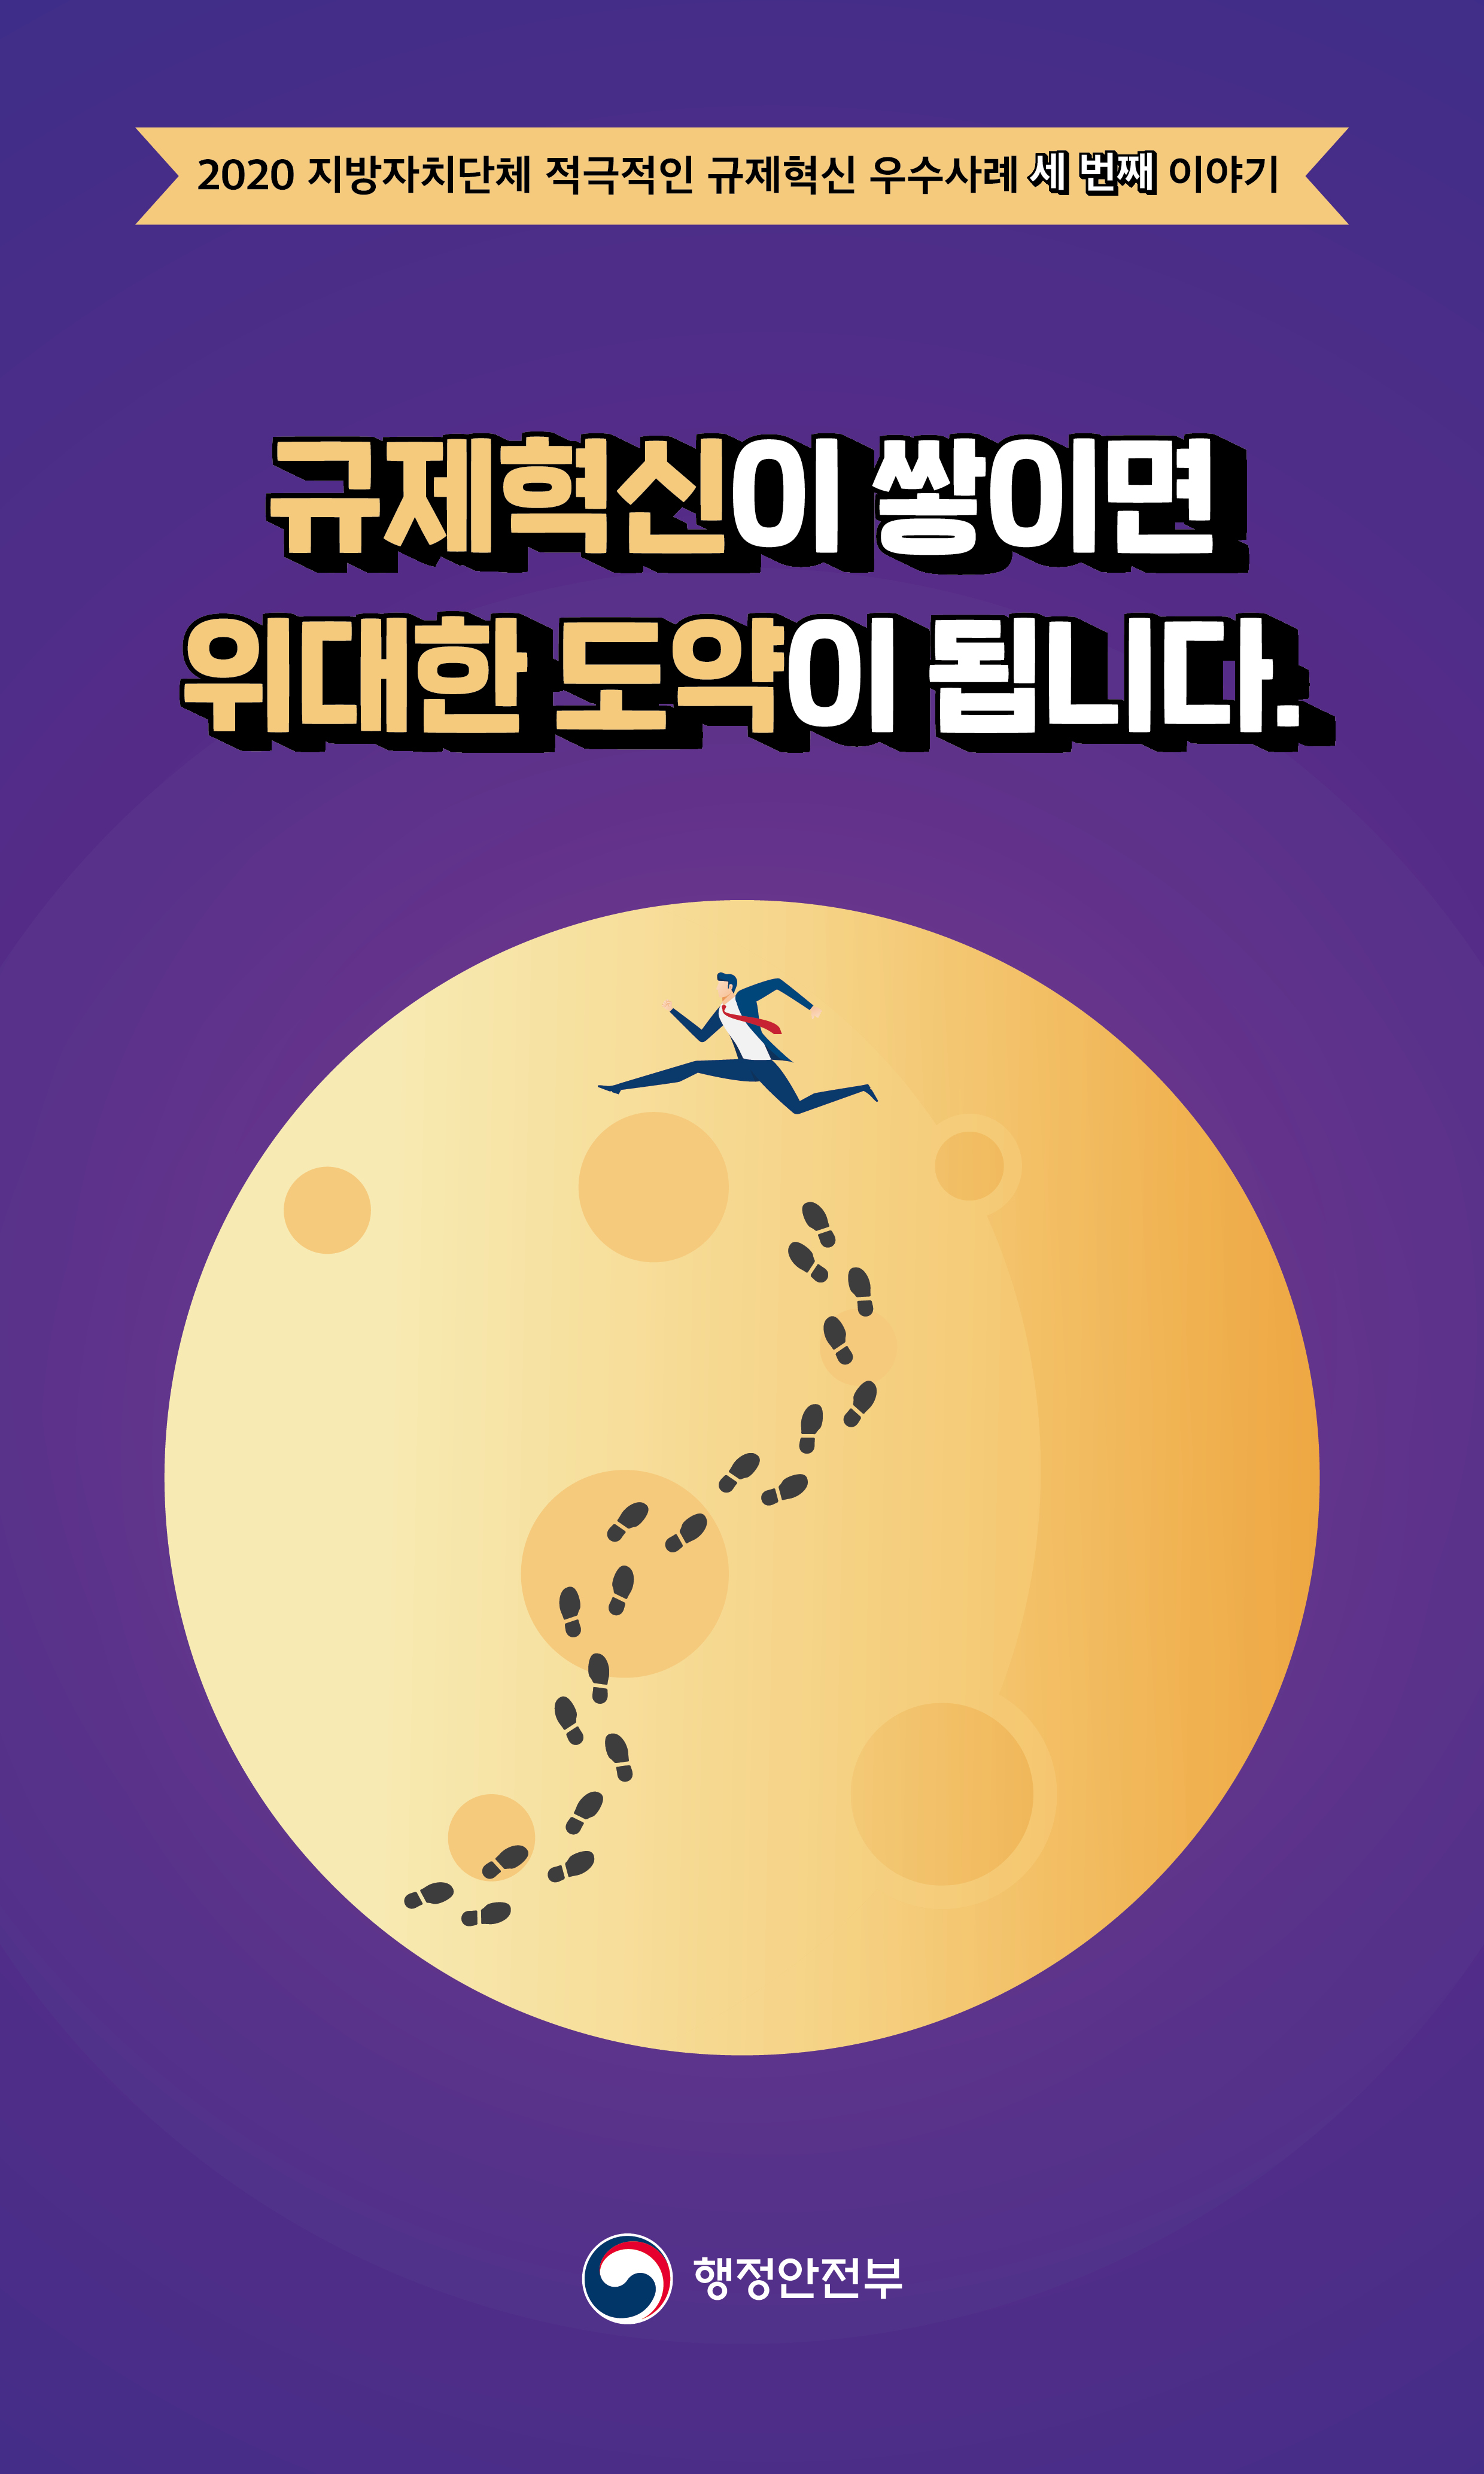 행안부_카드뉴스 3-1.jpg